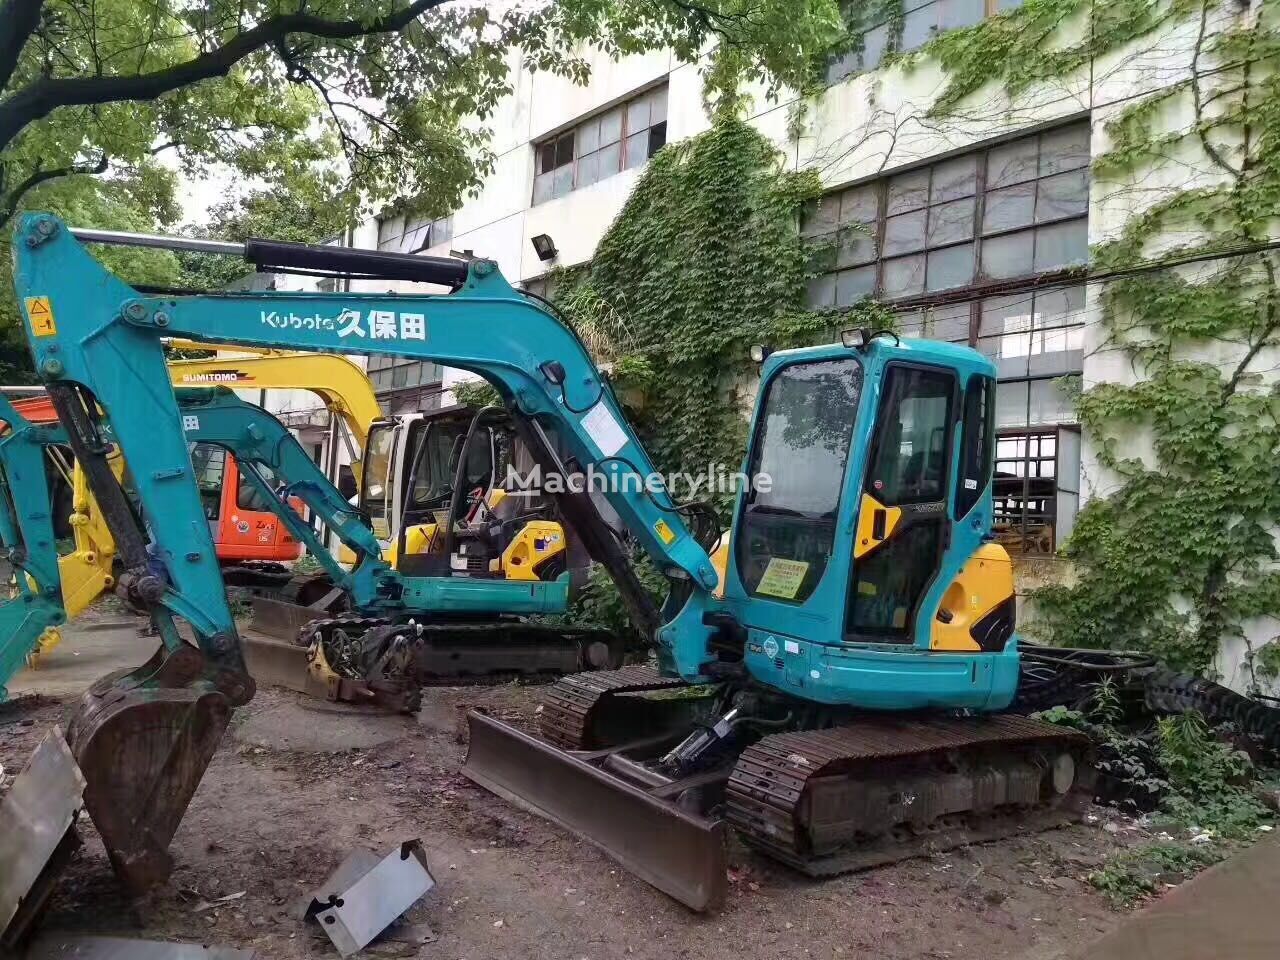 гусеничный экскаватор Kubota KX155-3 Kubota excavator 5.5ton Japanese Mini excavator